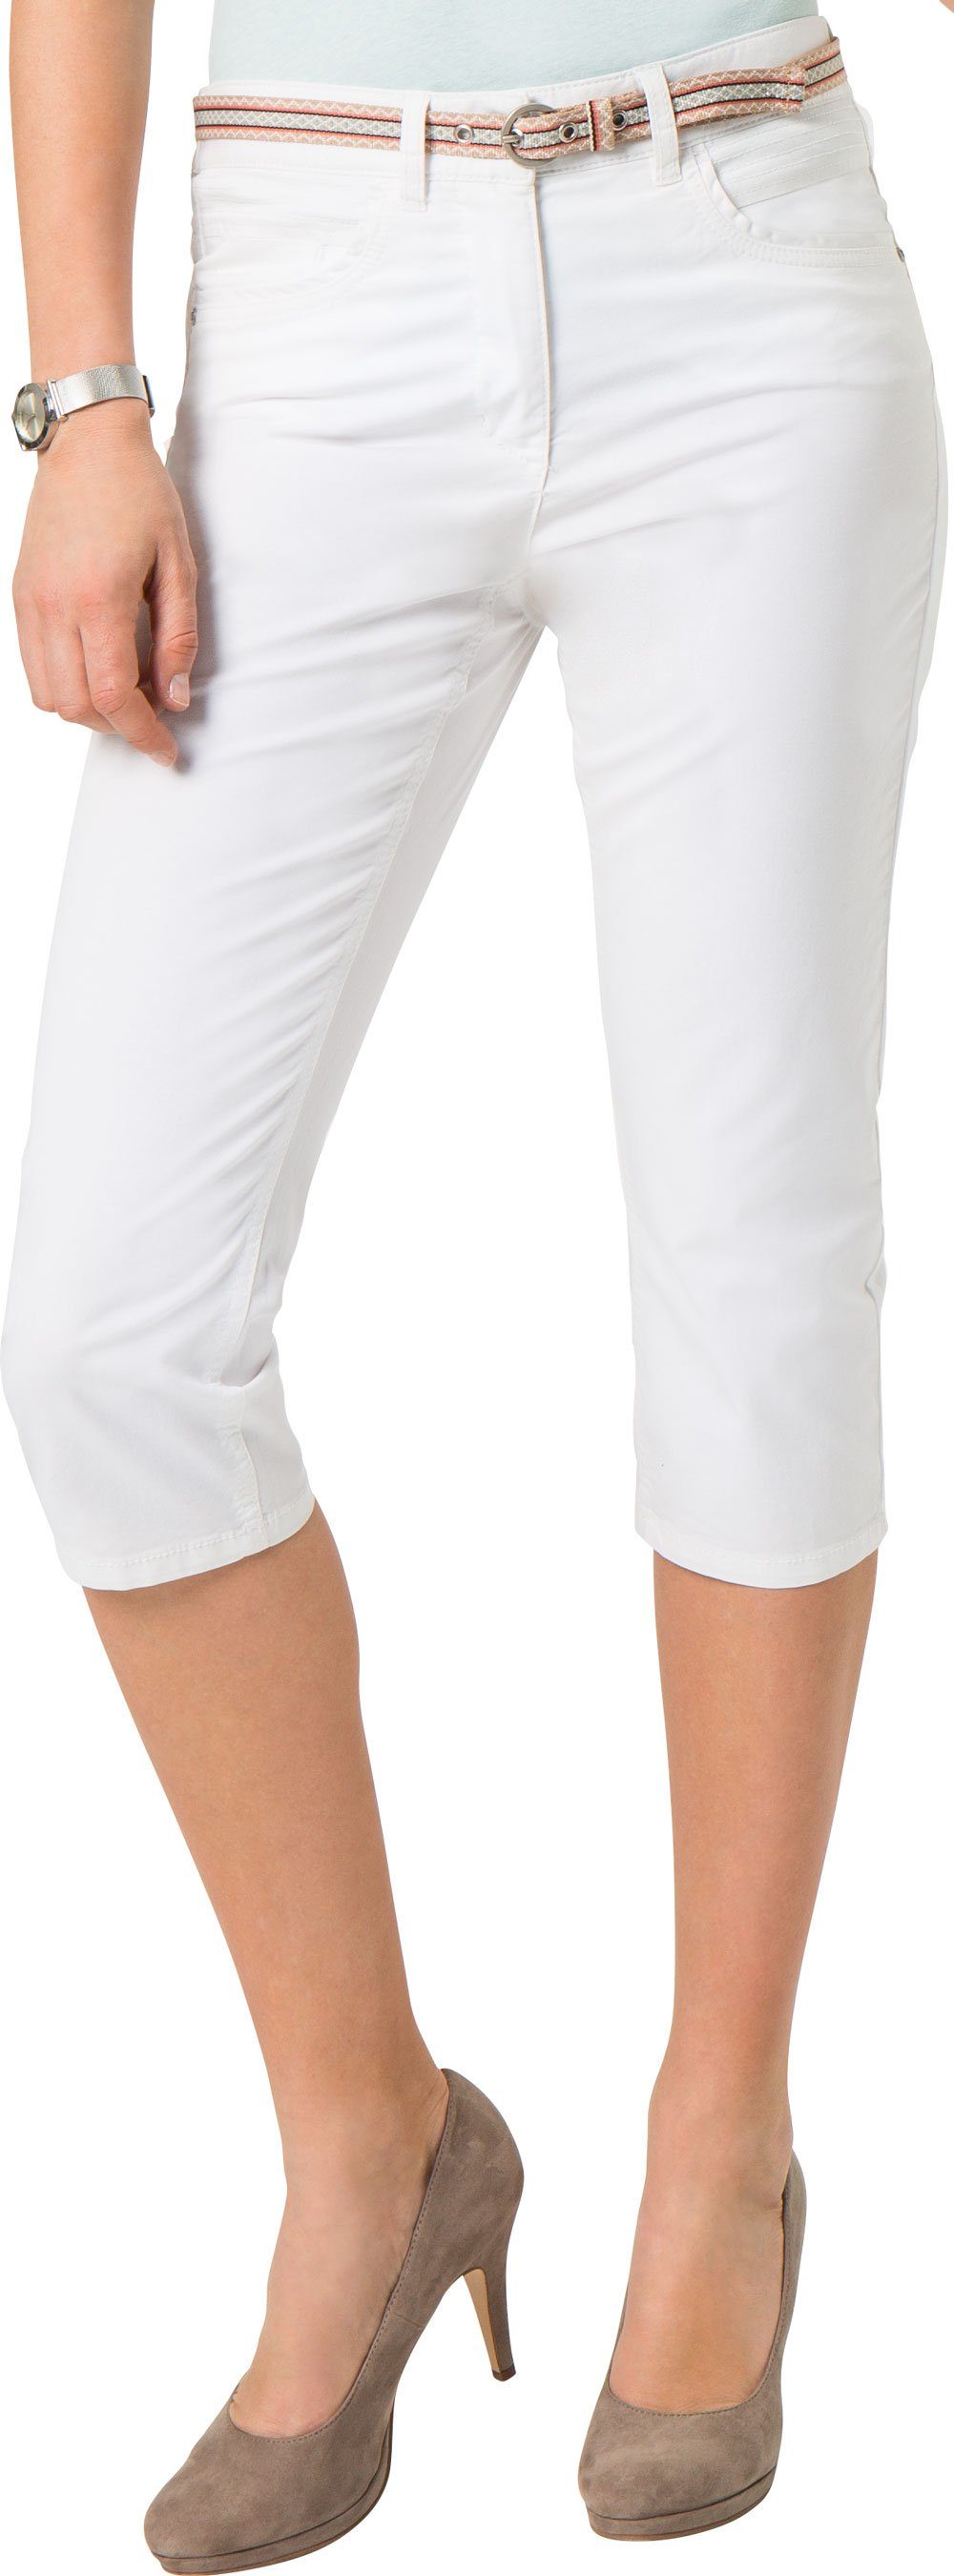 Emilia Parker Caprihose in praktischer 5-Pocket Ausführung inklusive schmalem Textilgürtel weiß